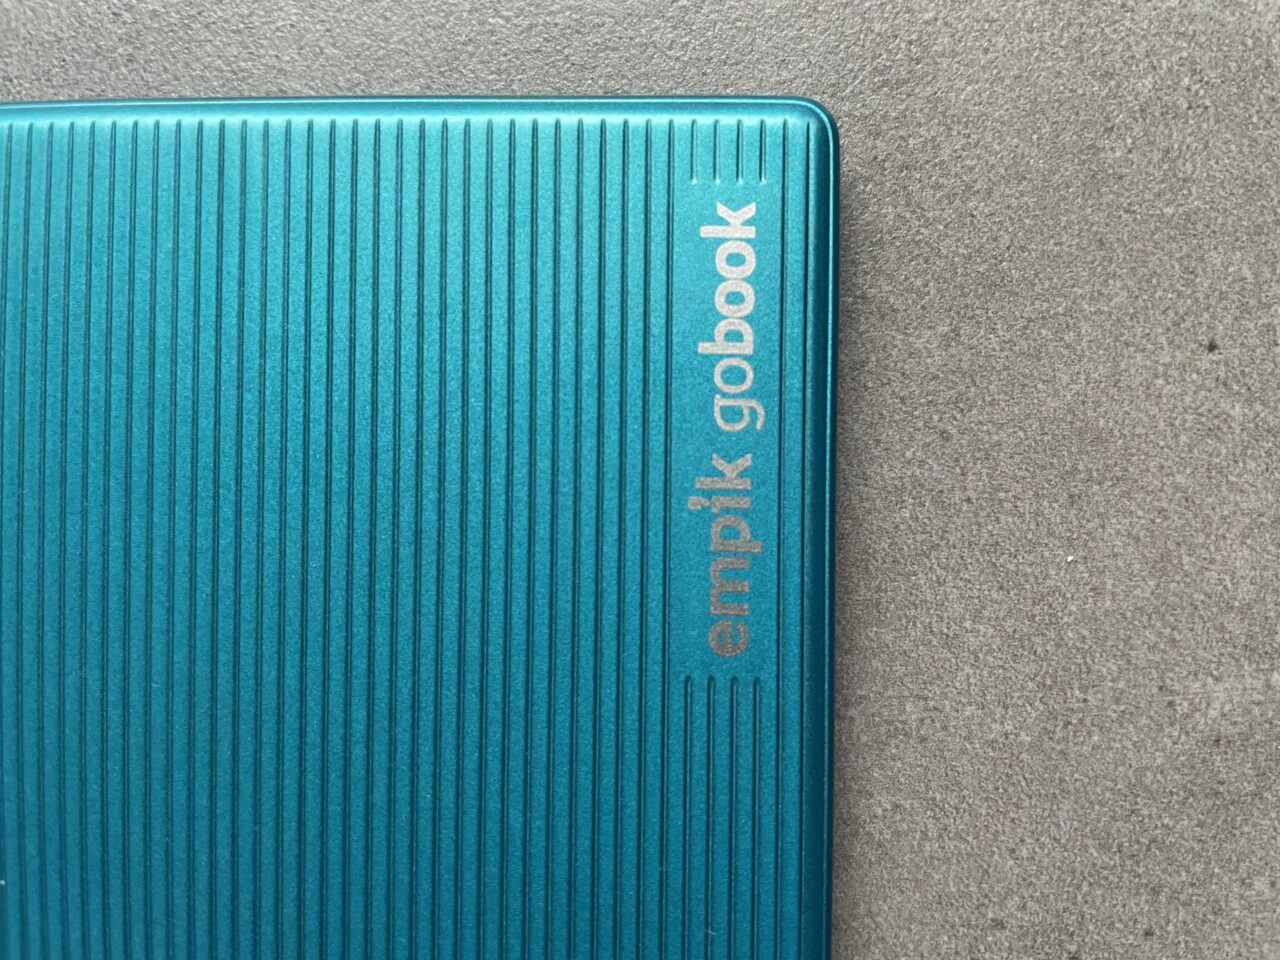 Niebieska okładka czytnika ebooków z wytłoczonym napisem "empik gobook" na szarym tle.